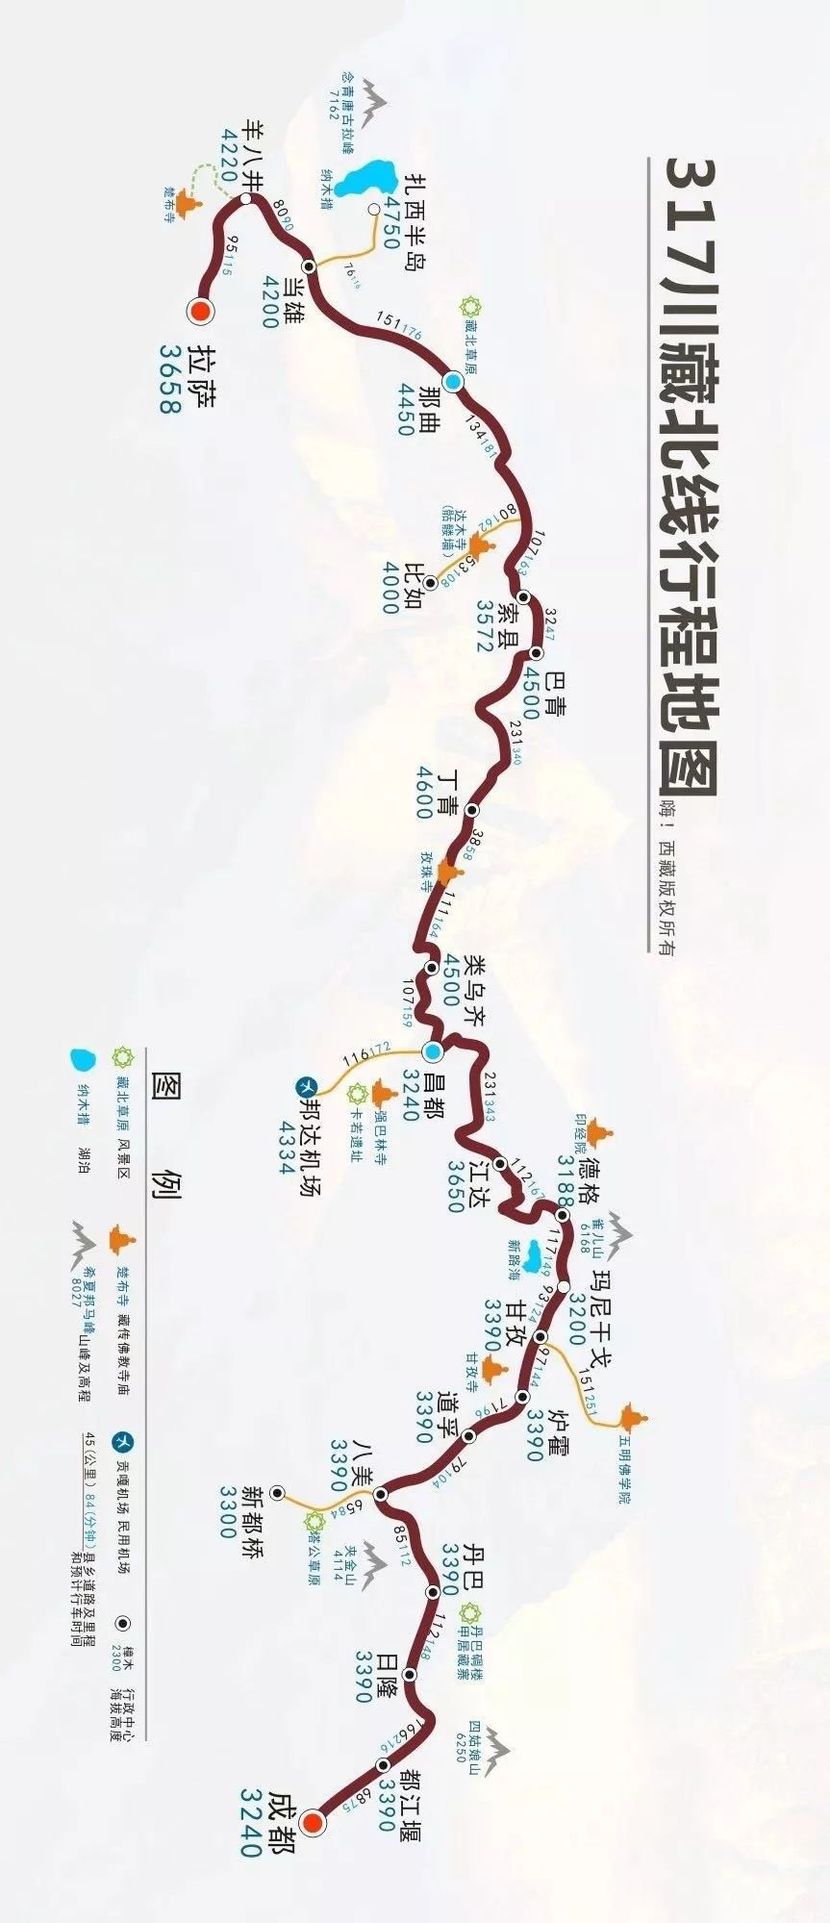 小风318川藏线·路上风景318国道起点为上海,终点为西藏友谊桥,全长